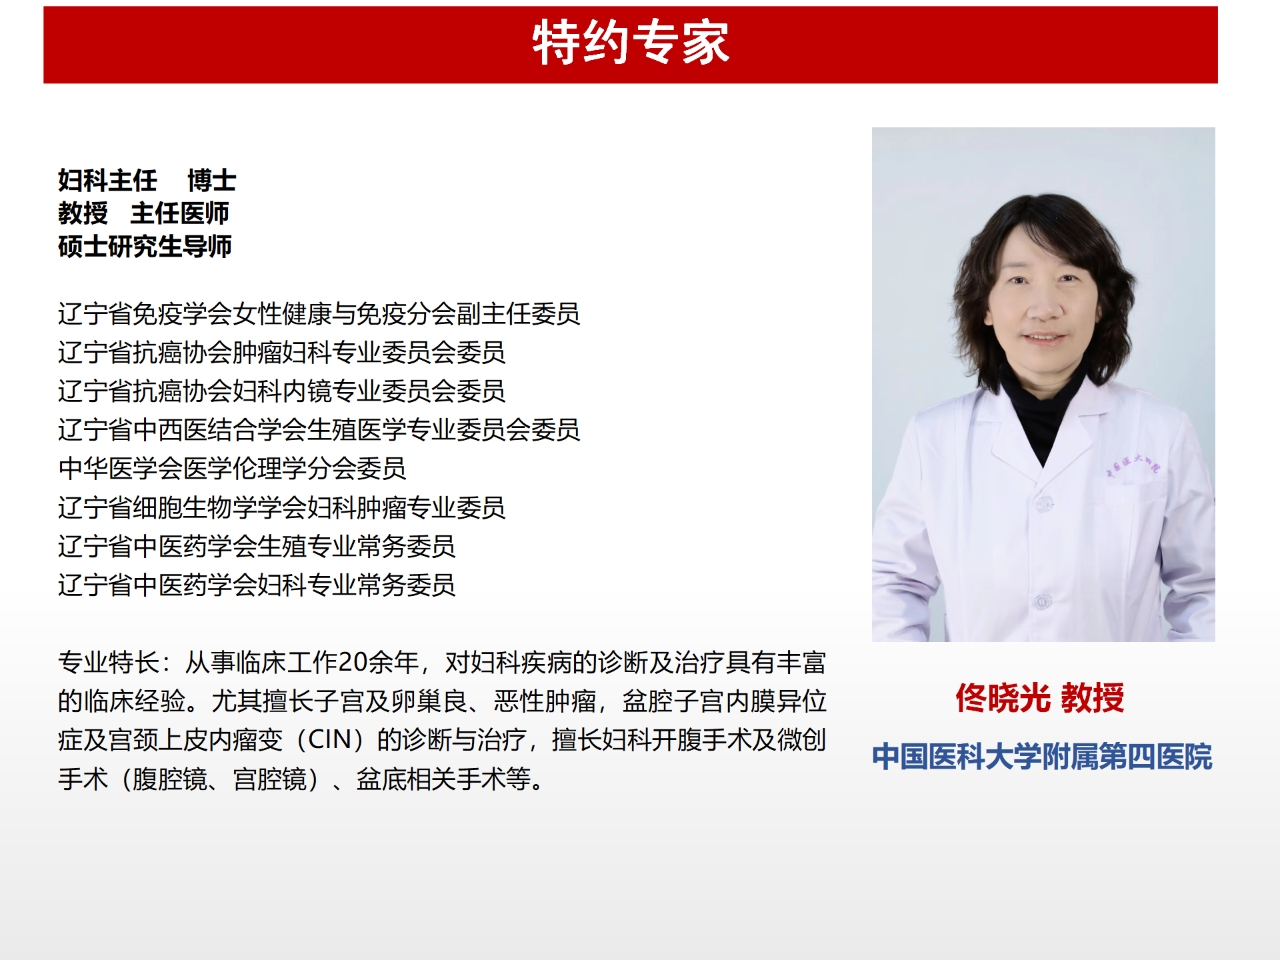 佟晓光教授谈卓越妇科医疗团队的打造